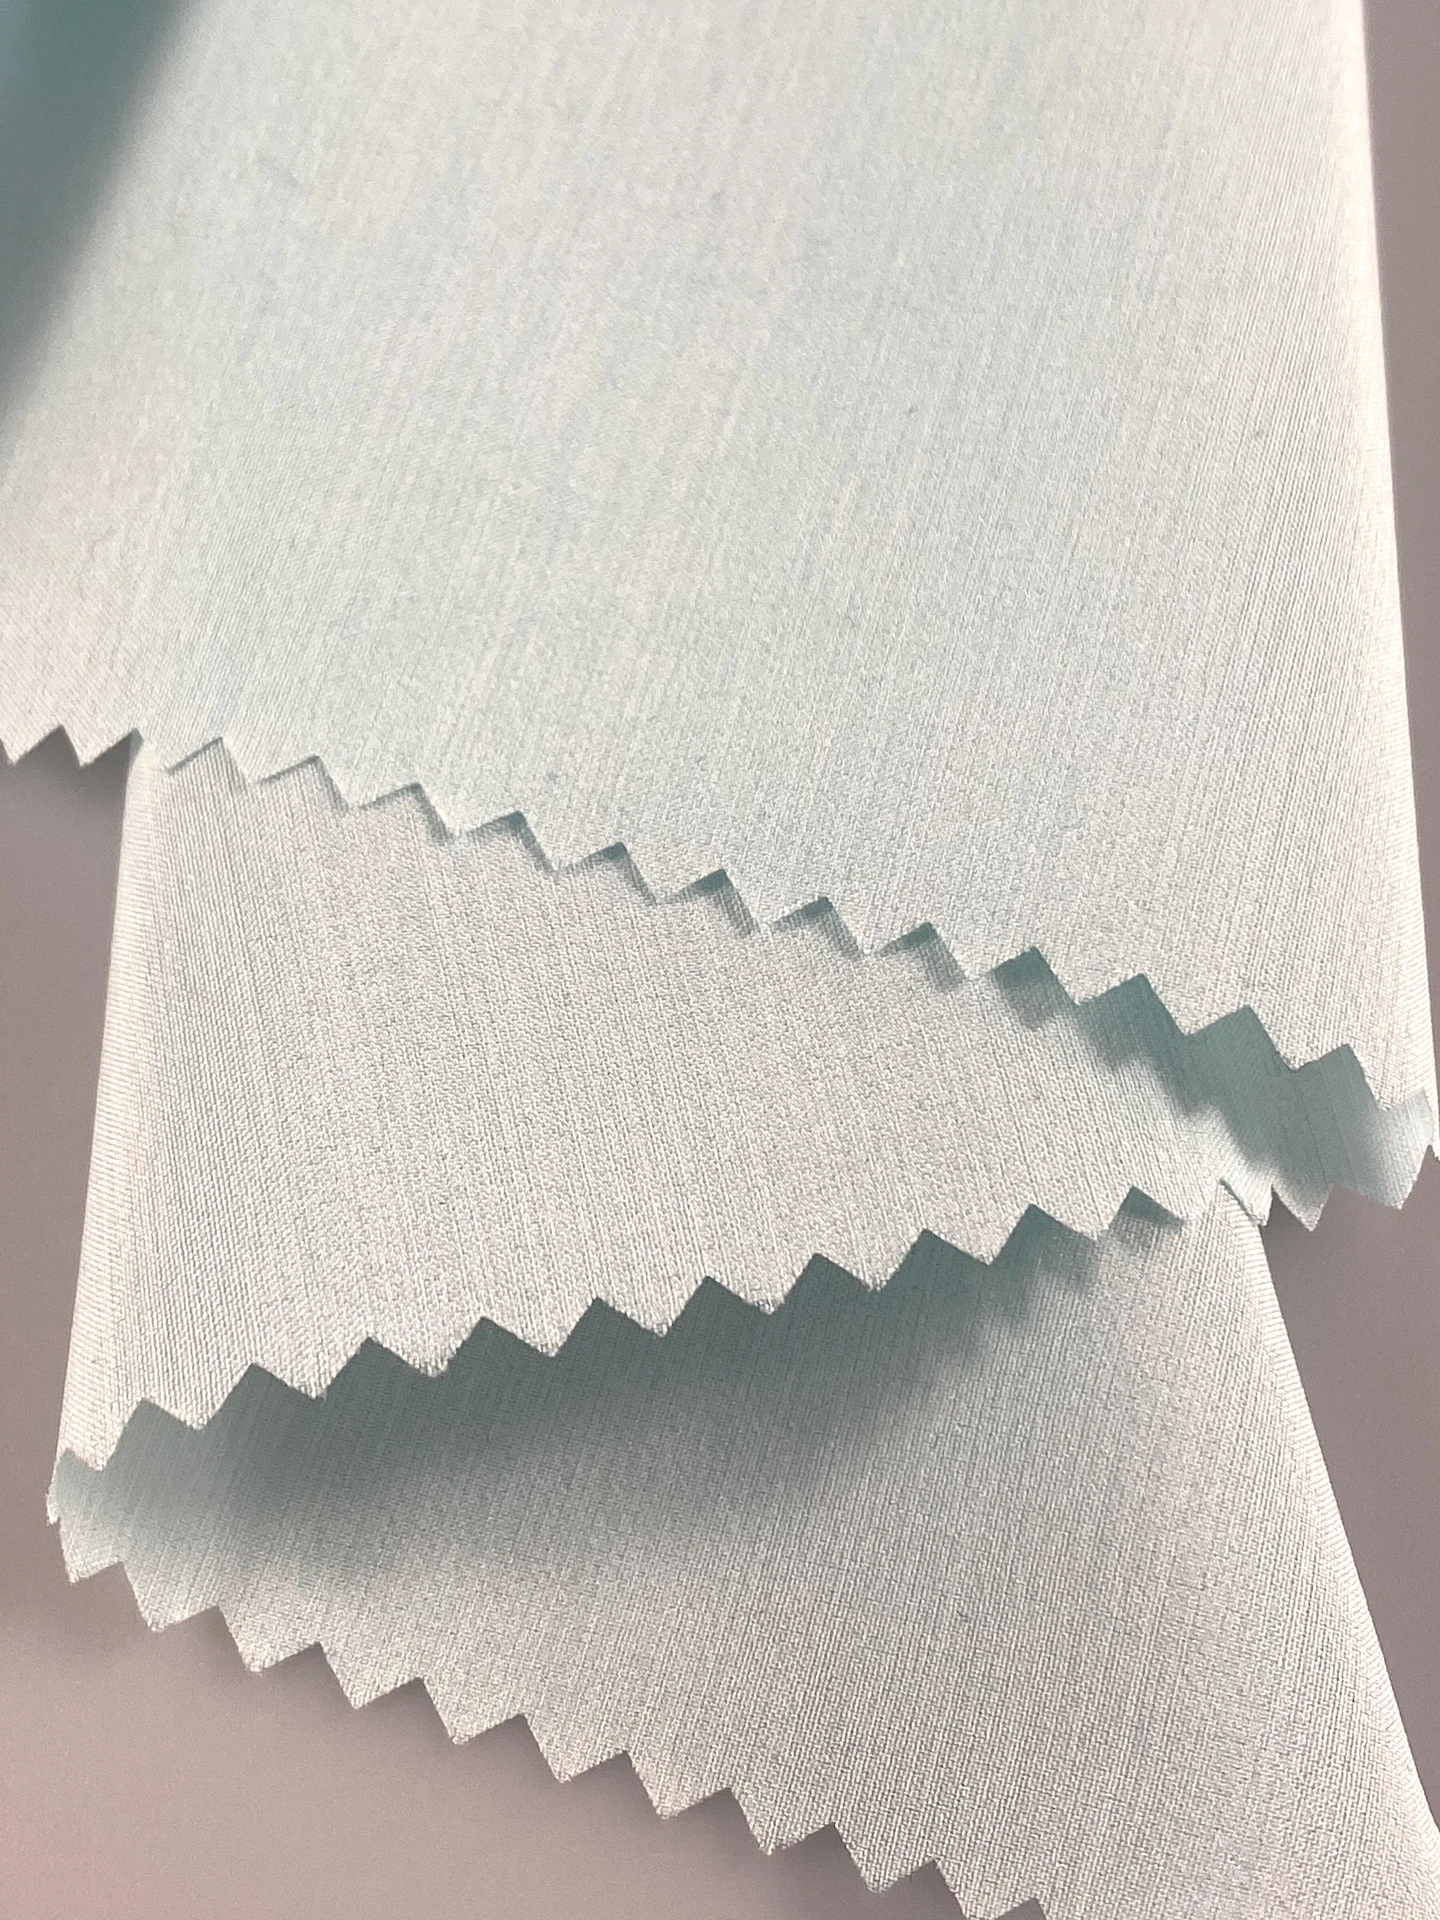 printed rayon viscose fabric